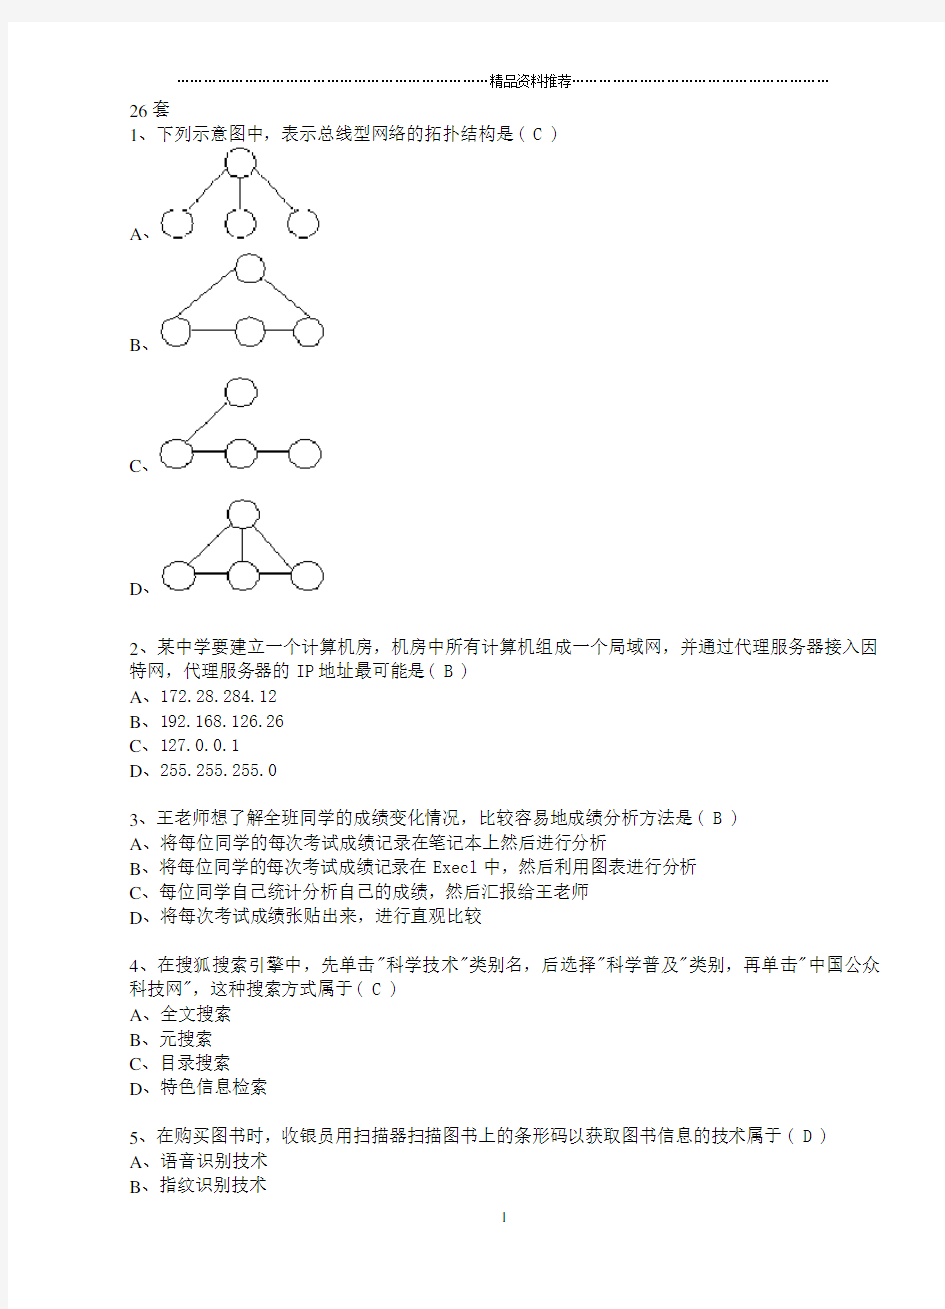 江苏省高中信息技术(31套)26-31套选择题答案和操作题